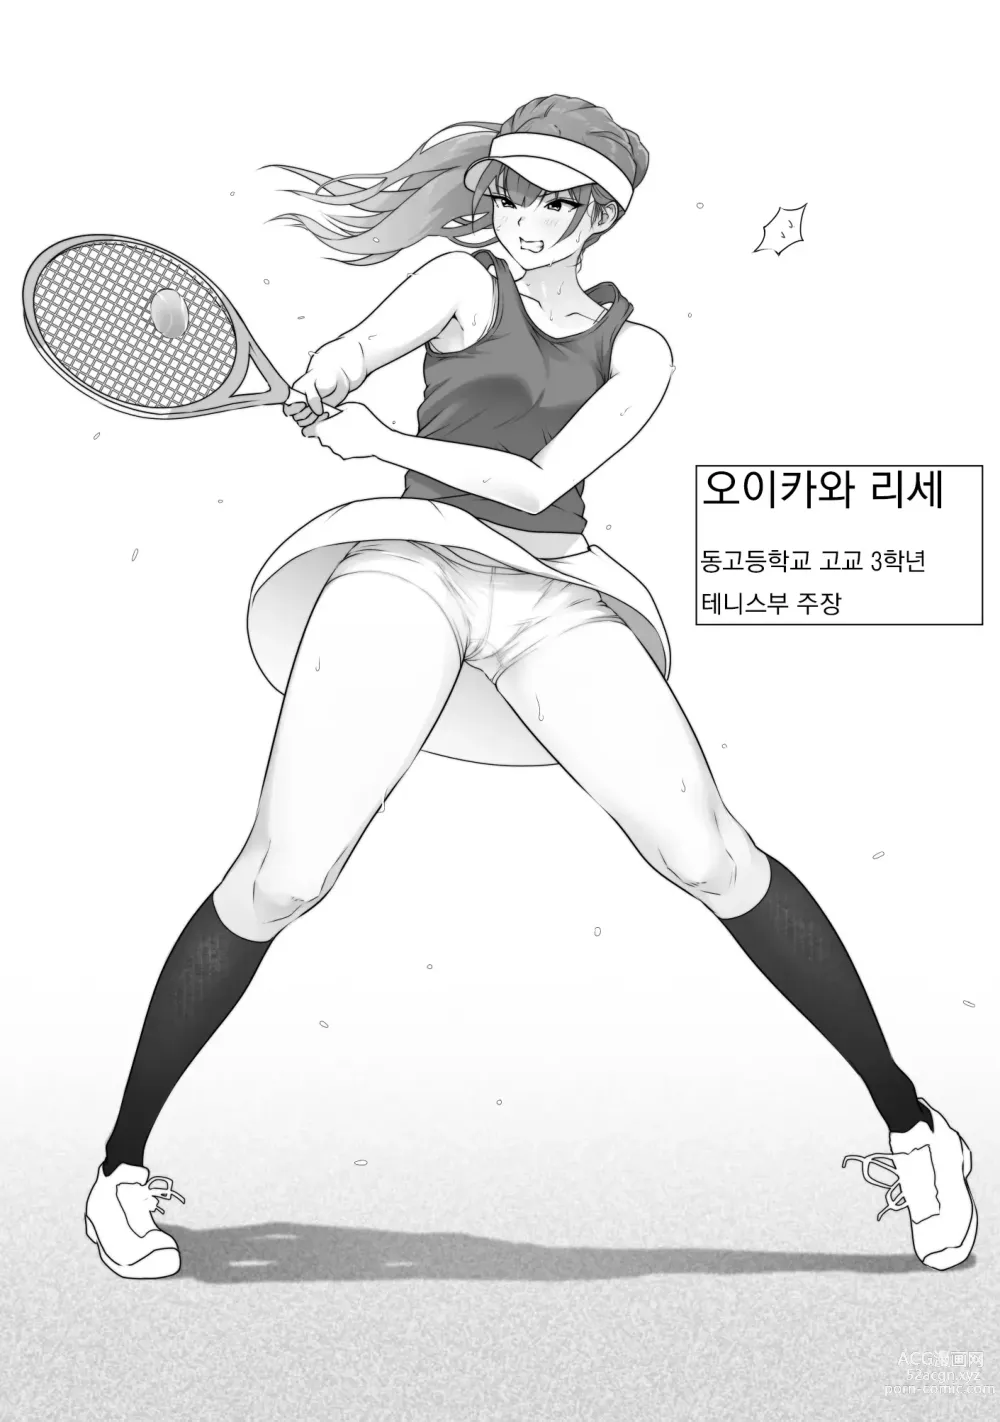 Page 4 of doujinshi 테니스부는 야구부의 손에 떨어졌습니다